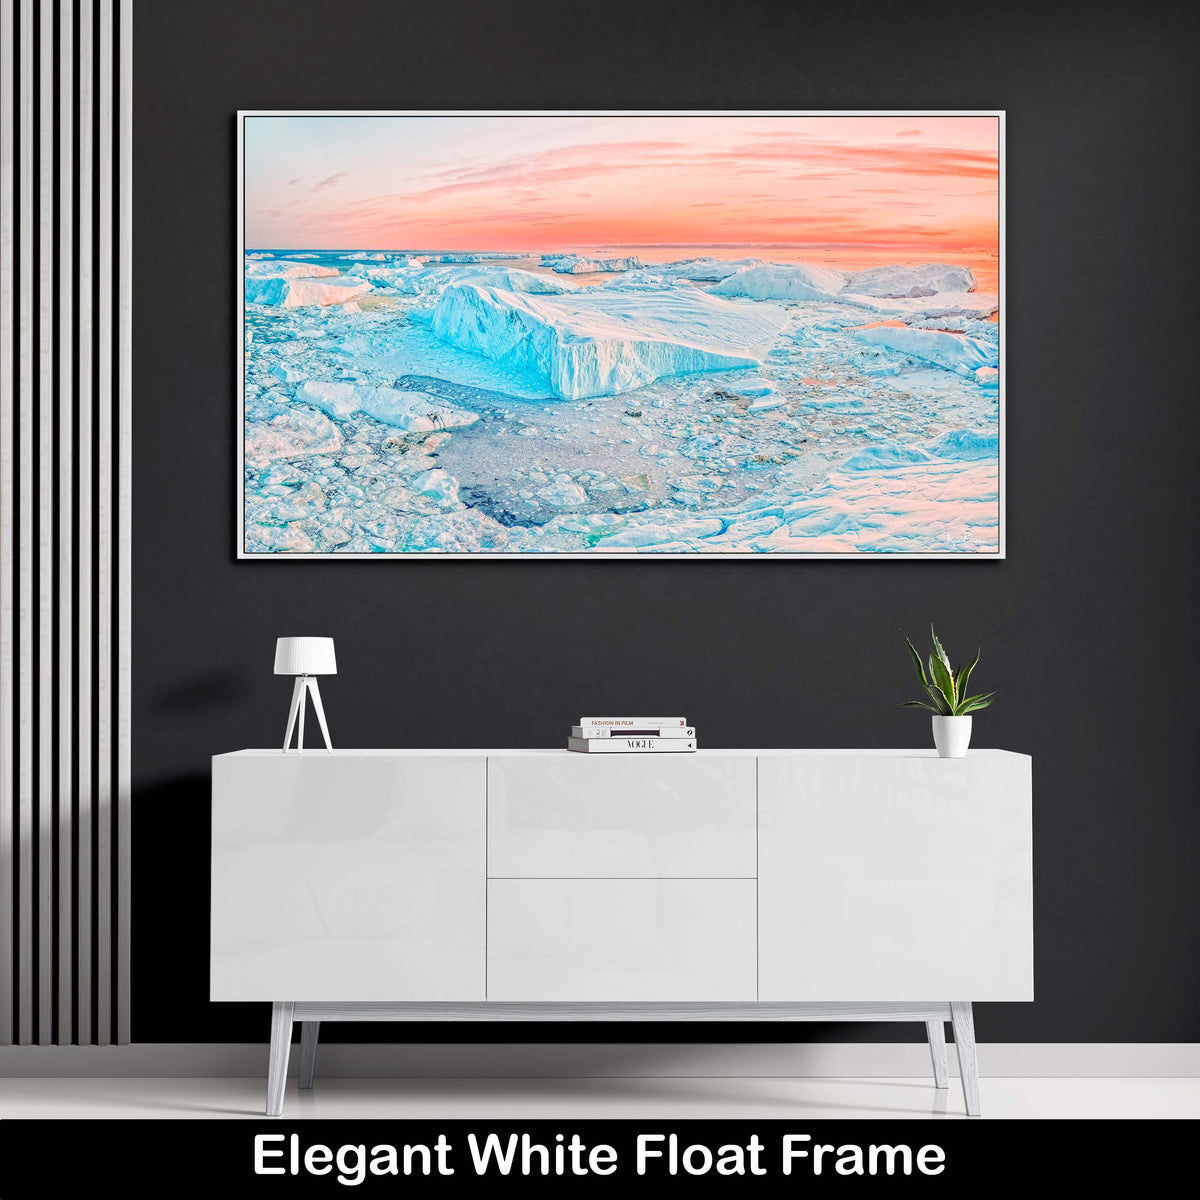 White-Winter-Landscape-Luxury-Wall-Art-Print-Sunset-Greenland-Icebergs-White-float-Frame